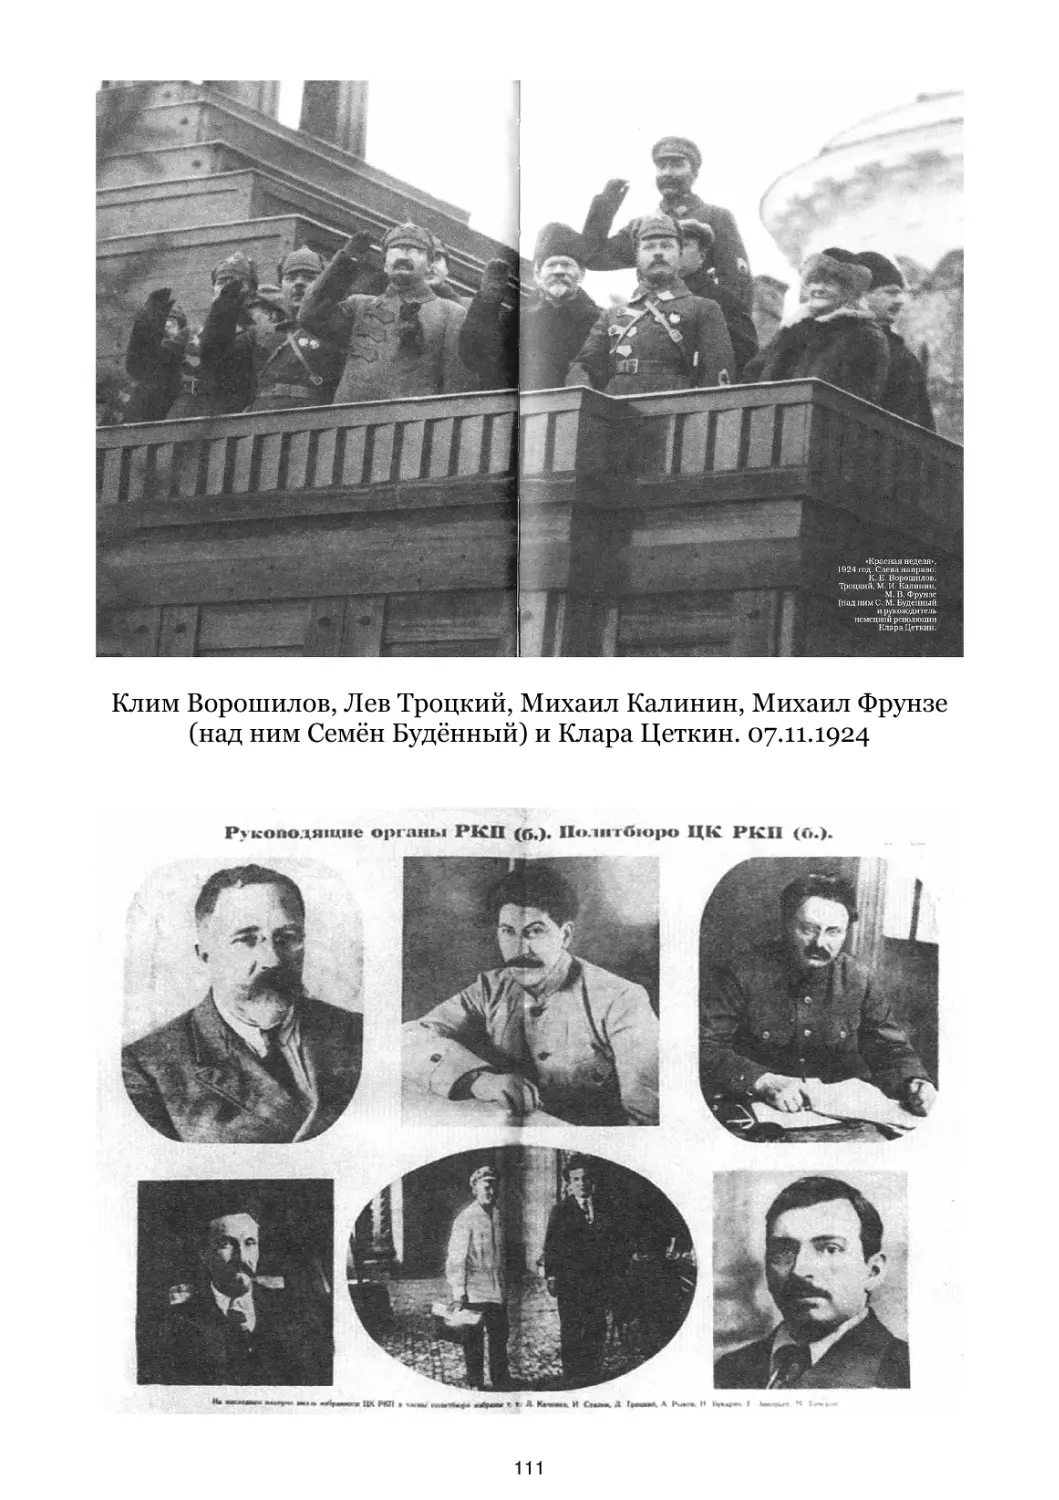 Клим Ворошилов, Лев Троцкий, Михаил Калинин, Михаил Фрунзе и Клара Цеткин. 07.11.1924